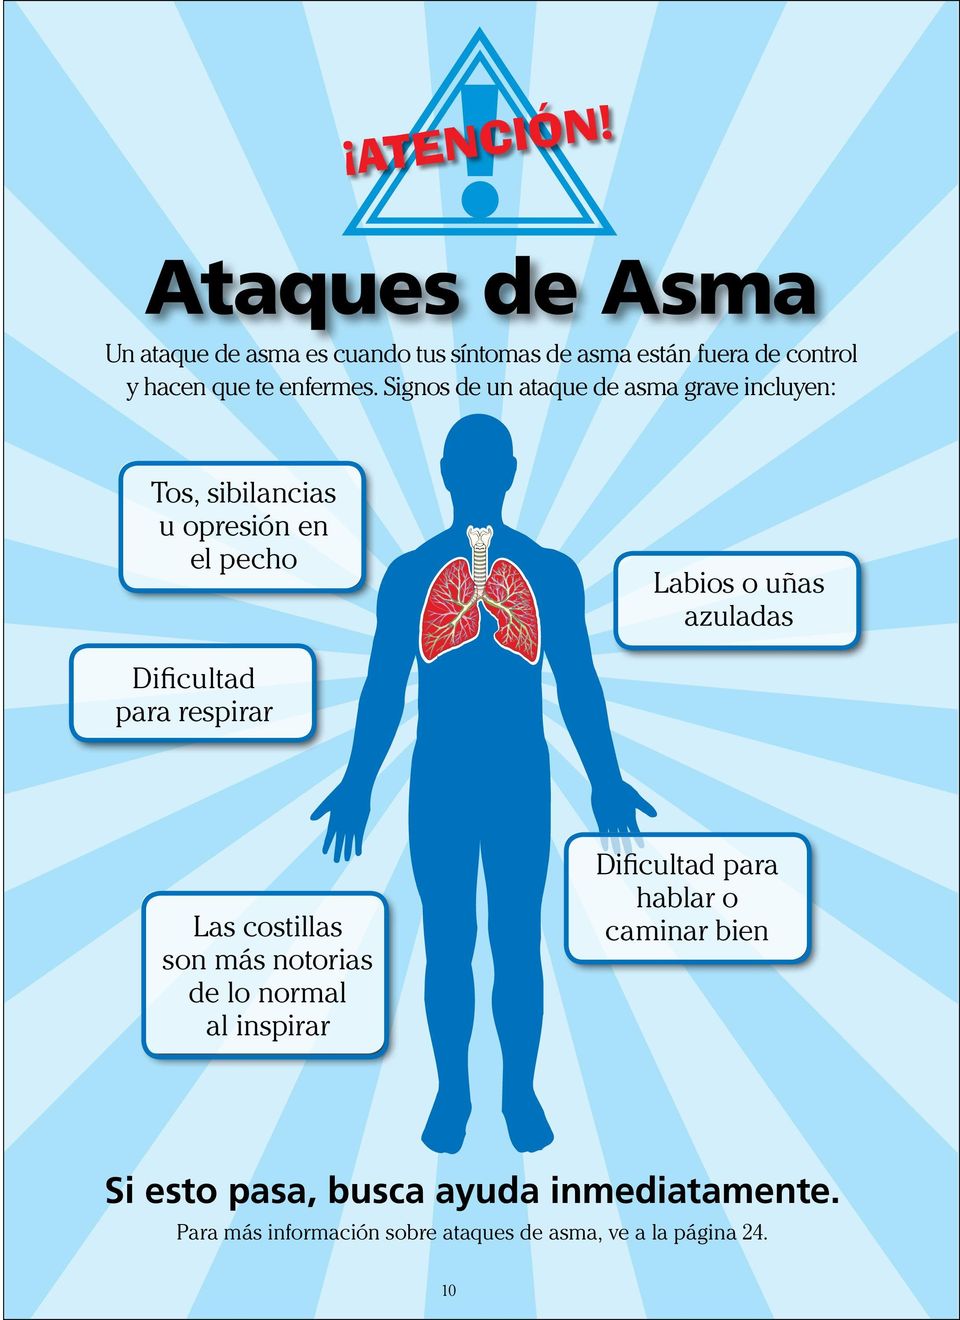 Signos de un ataque de asma grave incluyen: Tos, sibilancias u opresión en el pecho Labios o uñas azuladas